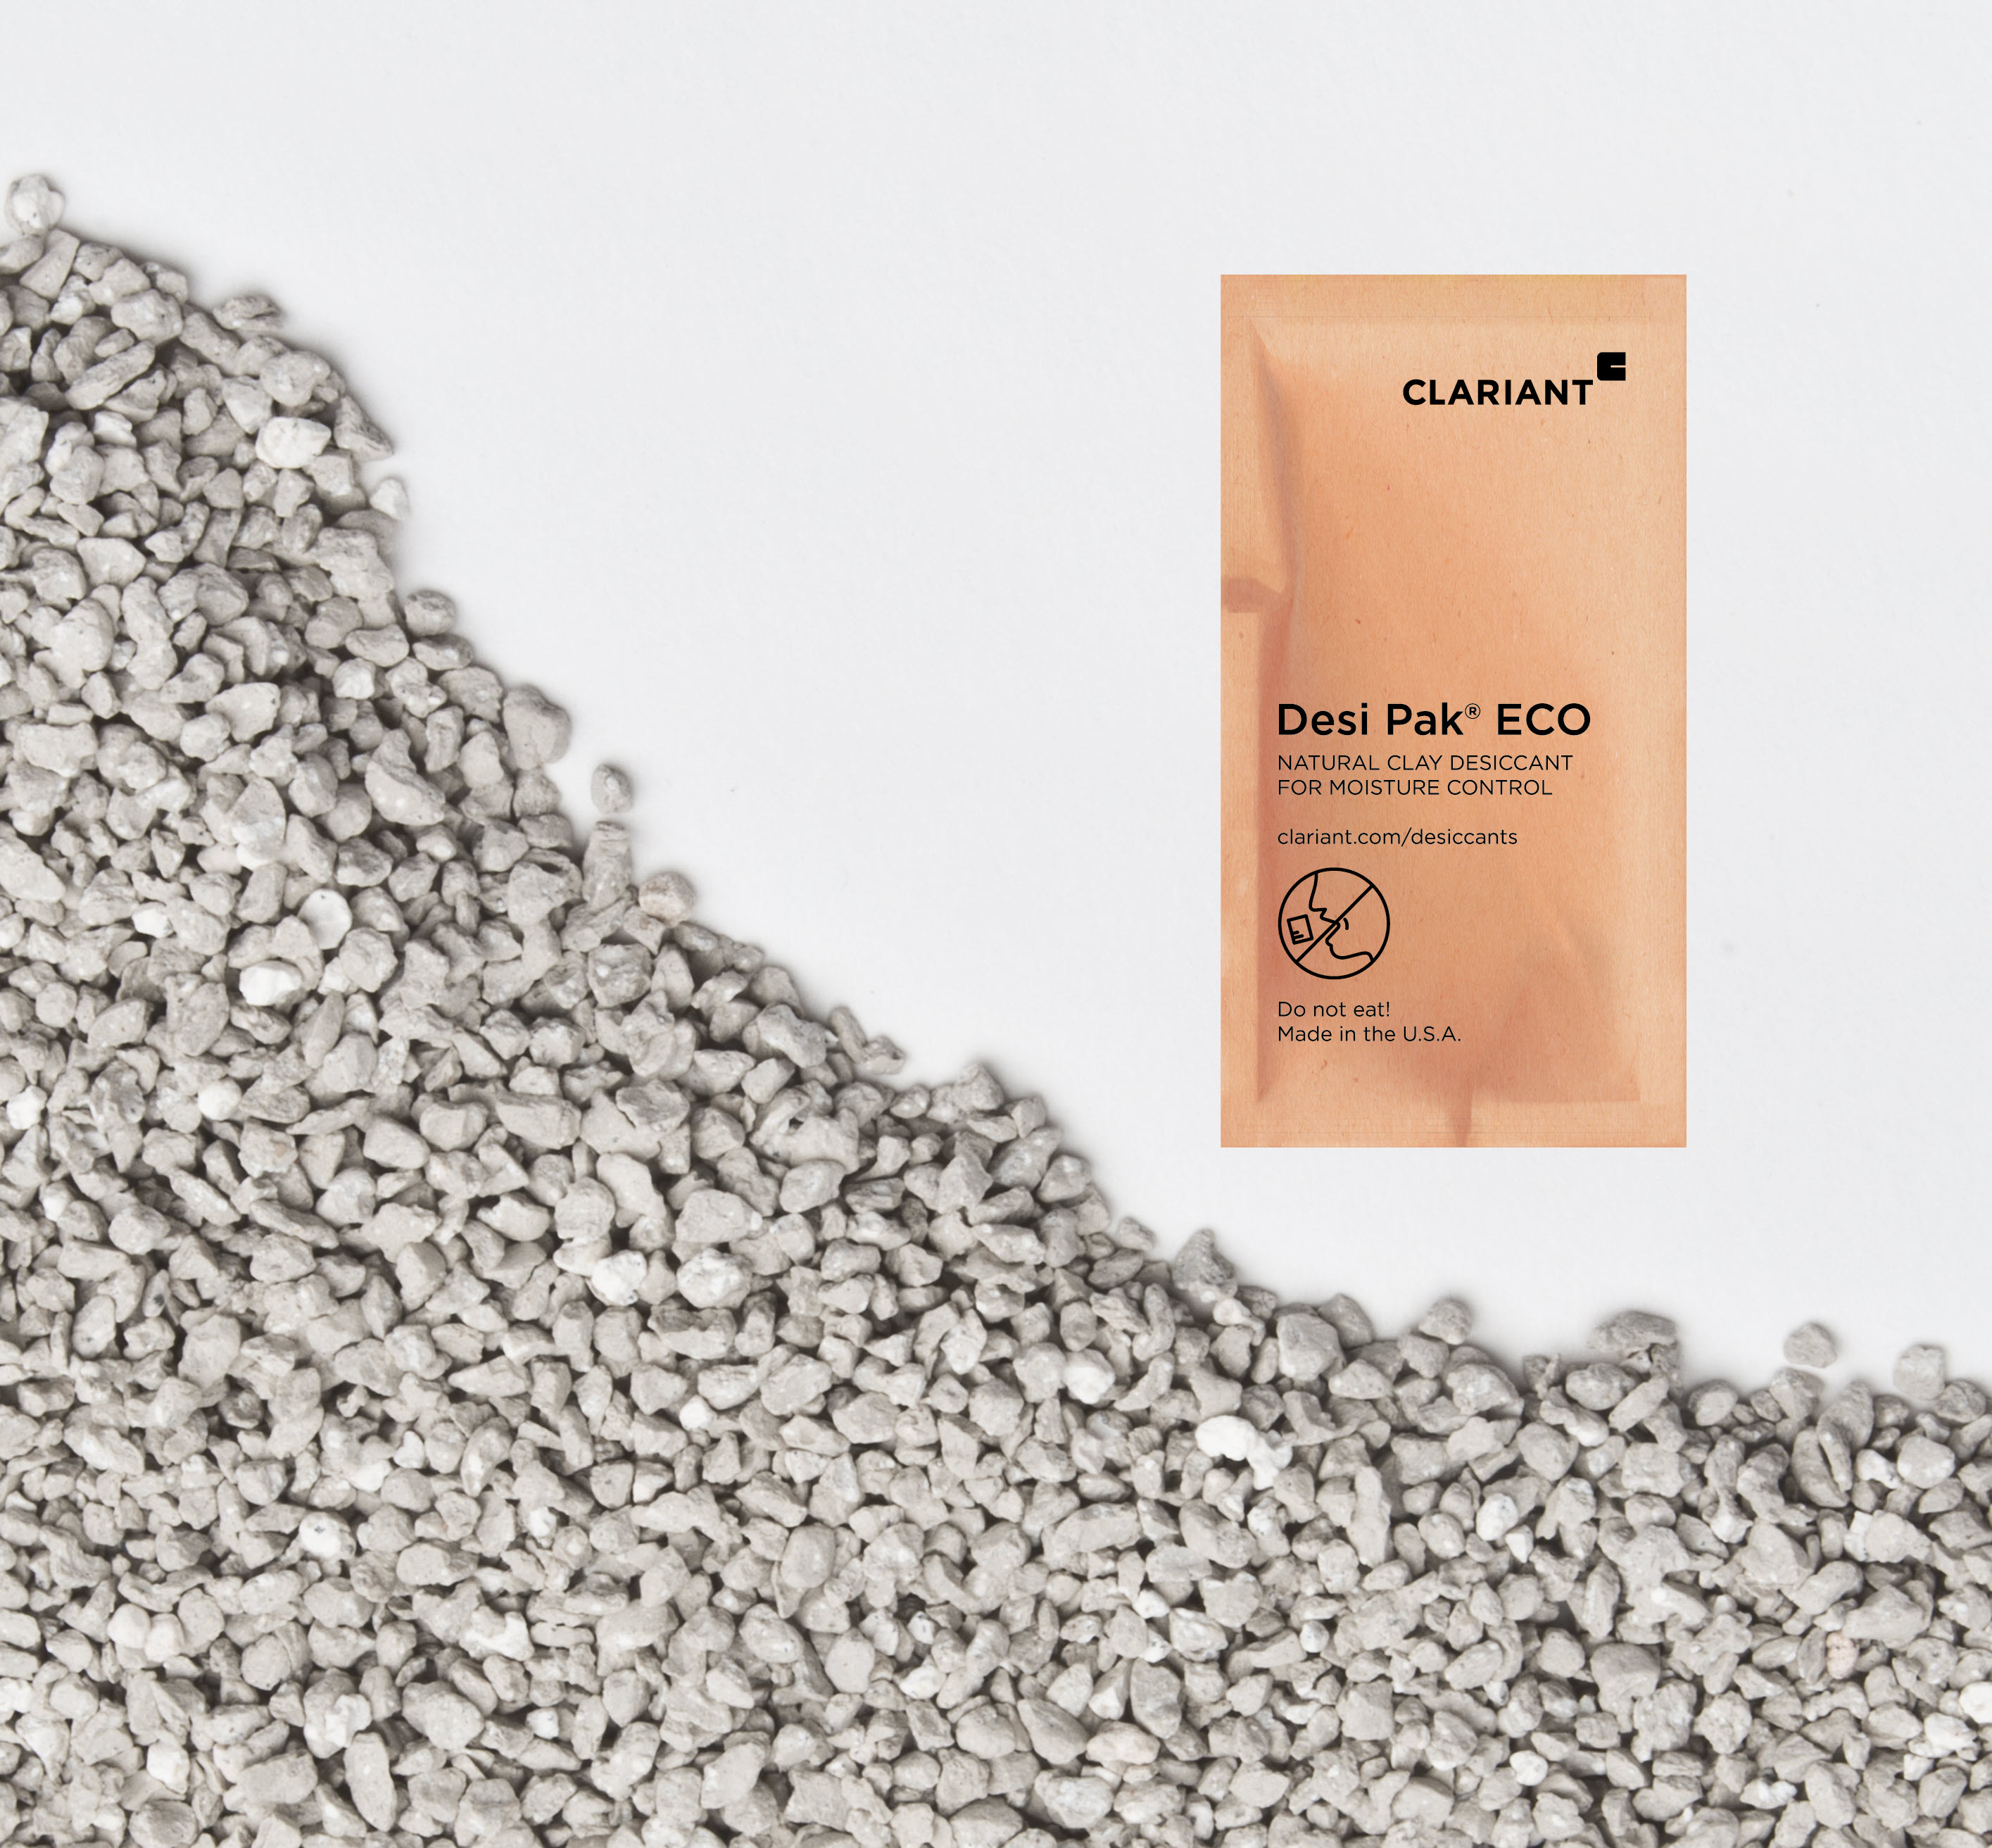 A Clariant lança as embalagens de absorção de umidade Desi Pak ECO de base biológica.